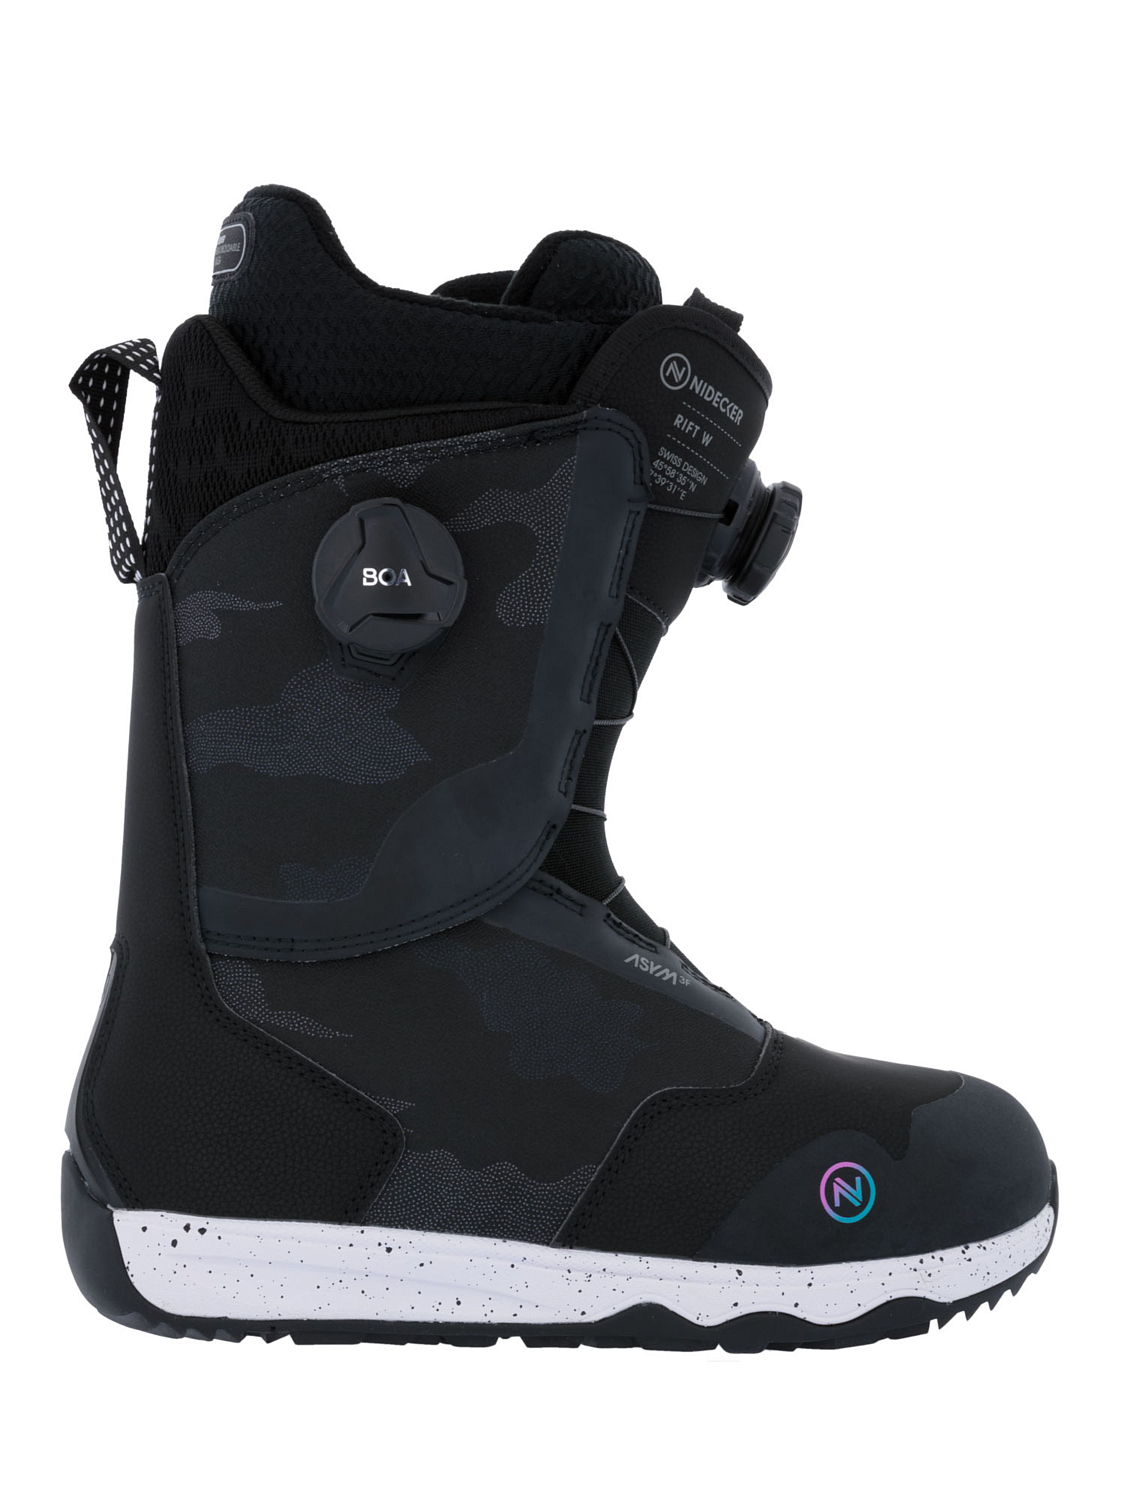 Ботинки для сноуборда NIDECKER Rift W Black